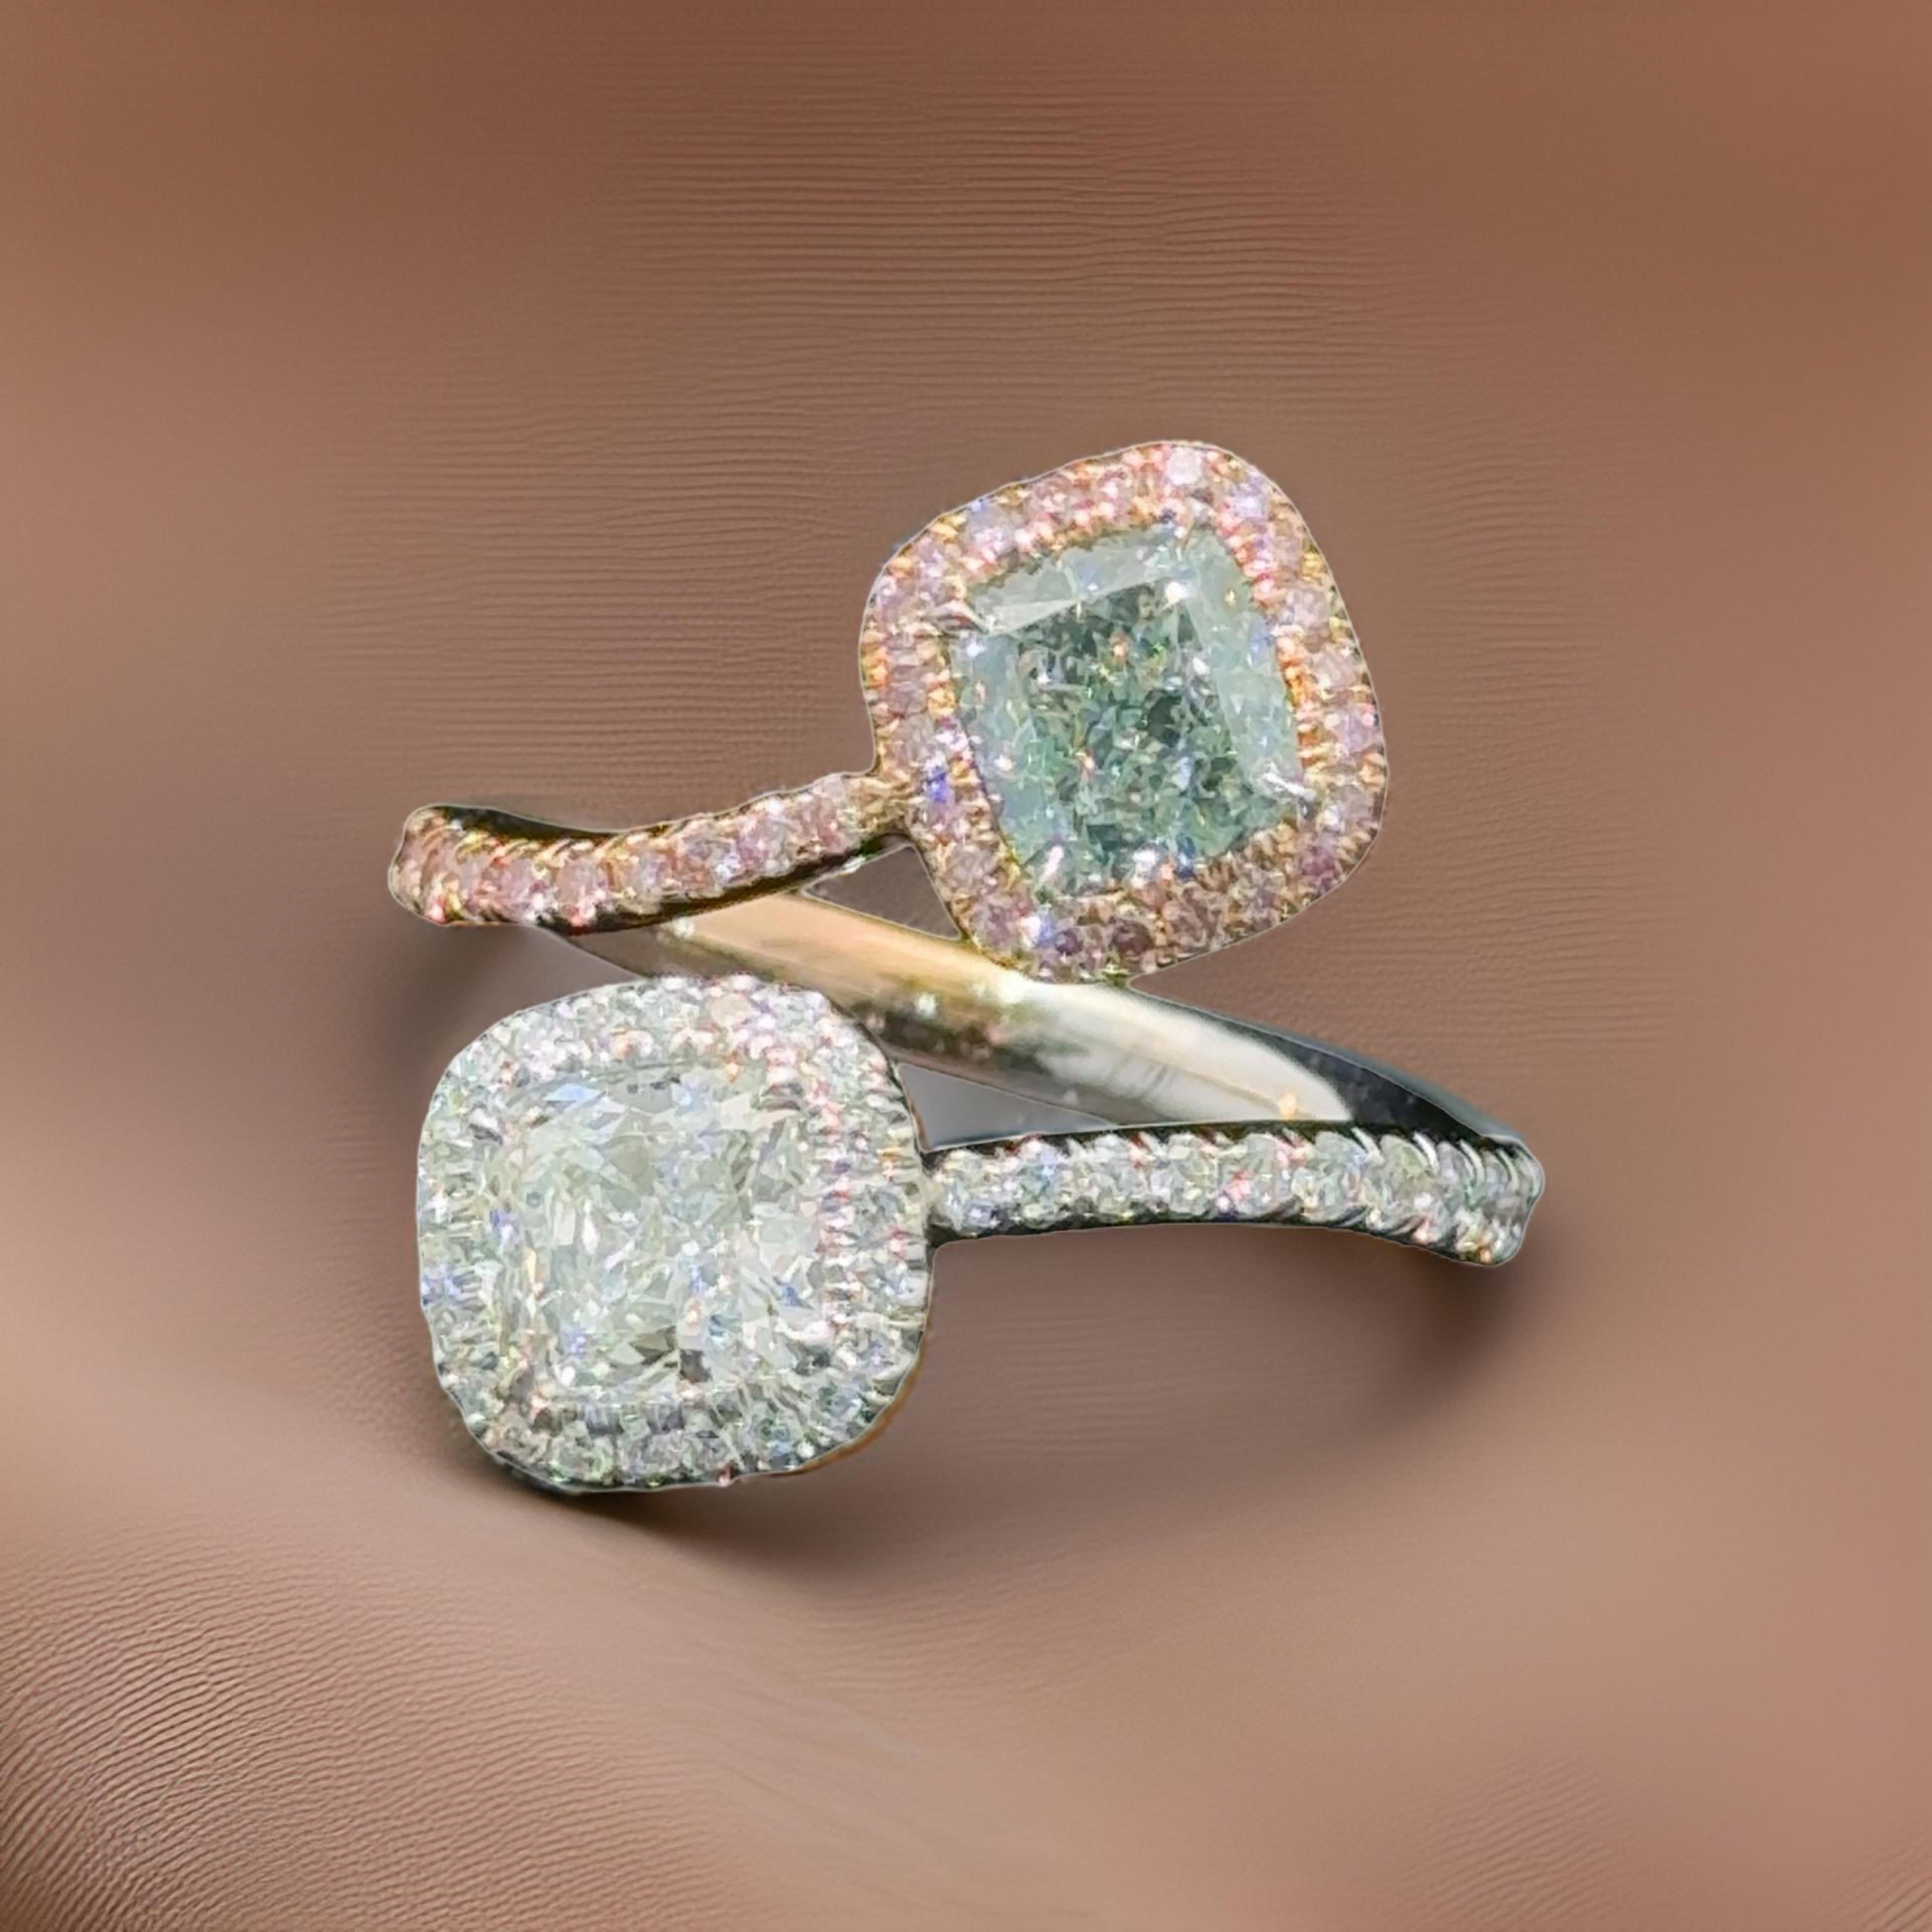 Natürliche grüne Fancy Color Diamanten sind eine Rarität in der Natur! Grüne Diamanten sind meist mit Sekundärfarben versehen. 
Unser natürlicher grüner Cushion Cut wurde vom Gemological Institute of America (GIA) als STRAIGHT Fancy Light Green